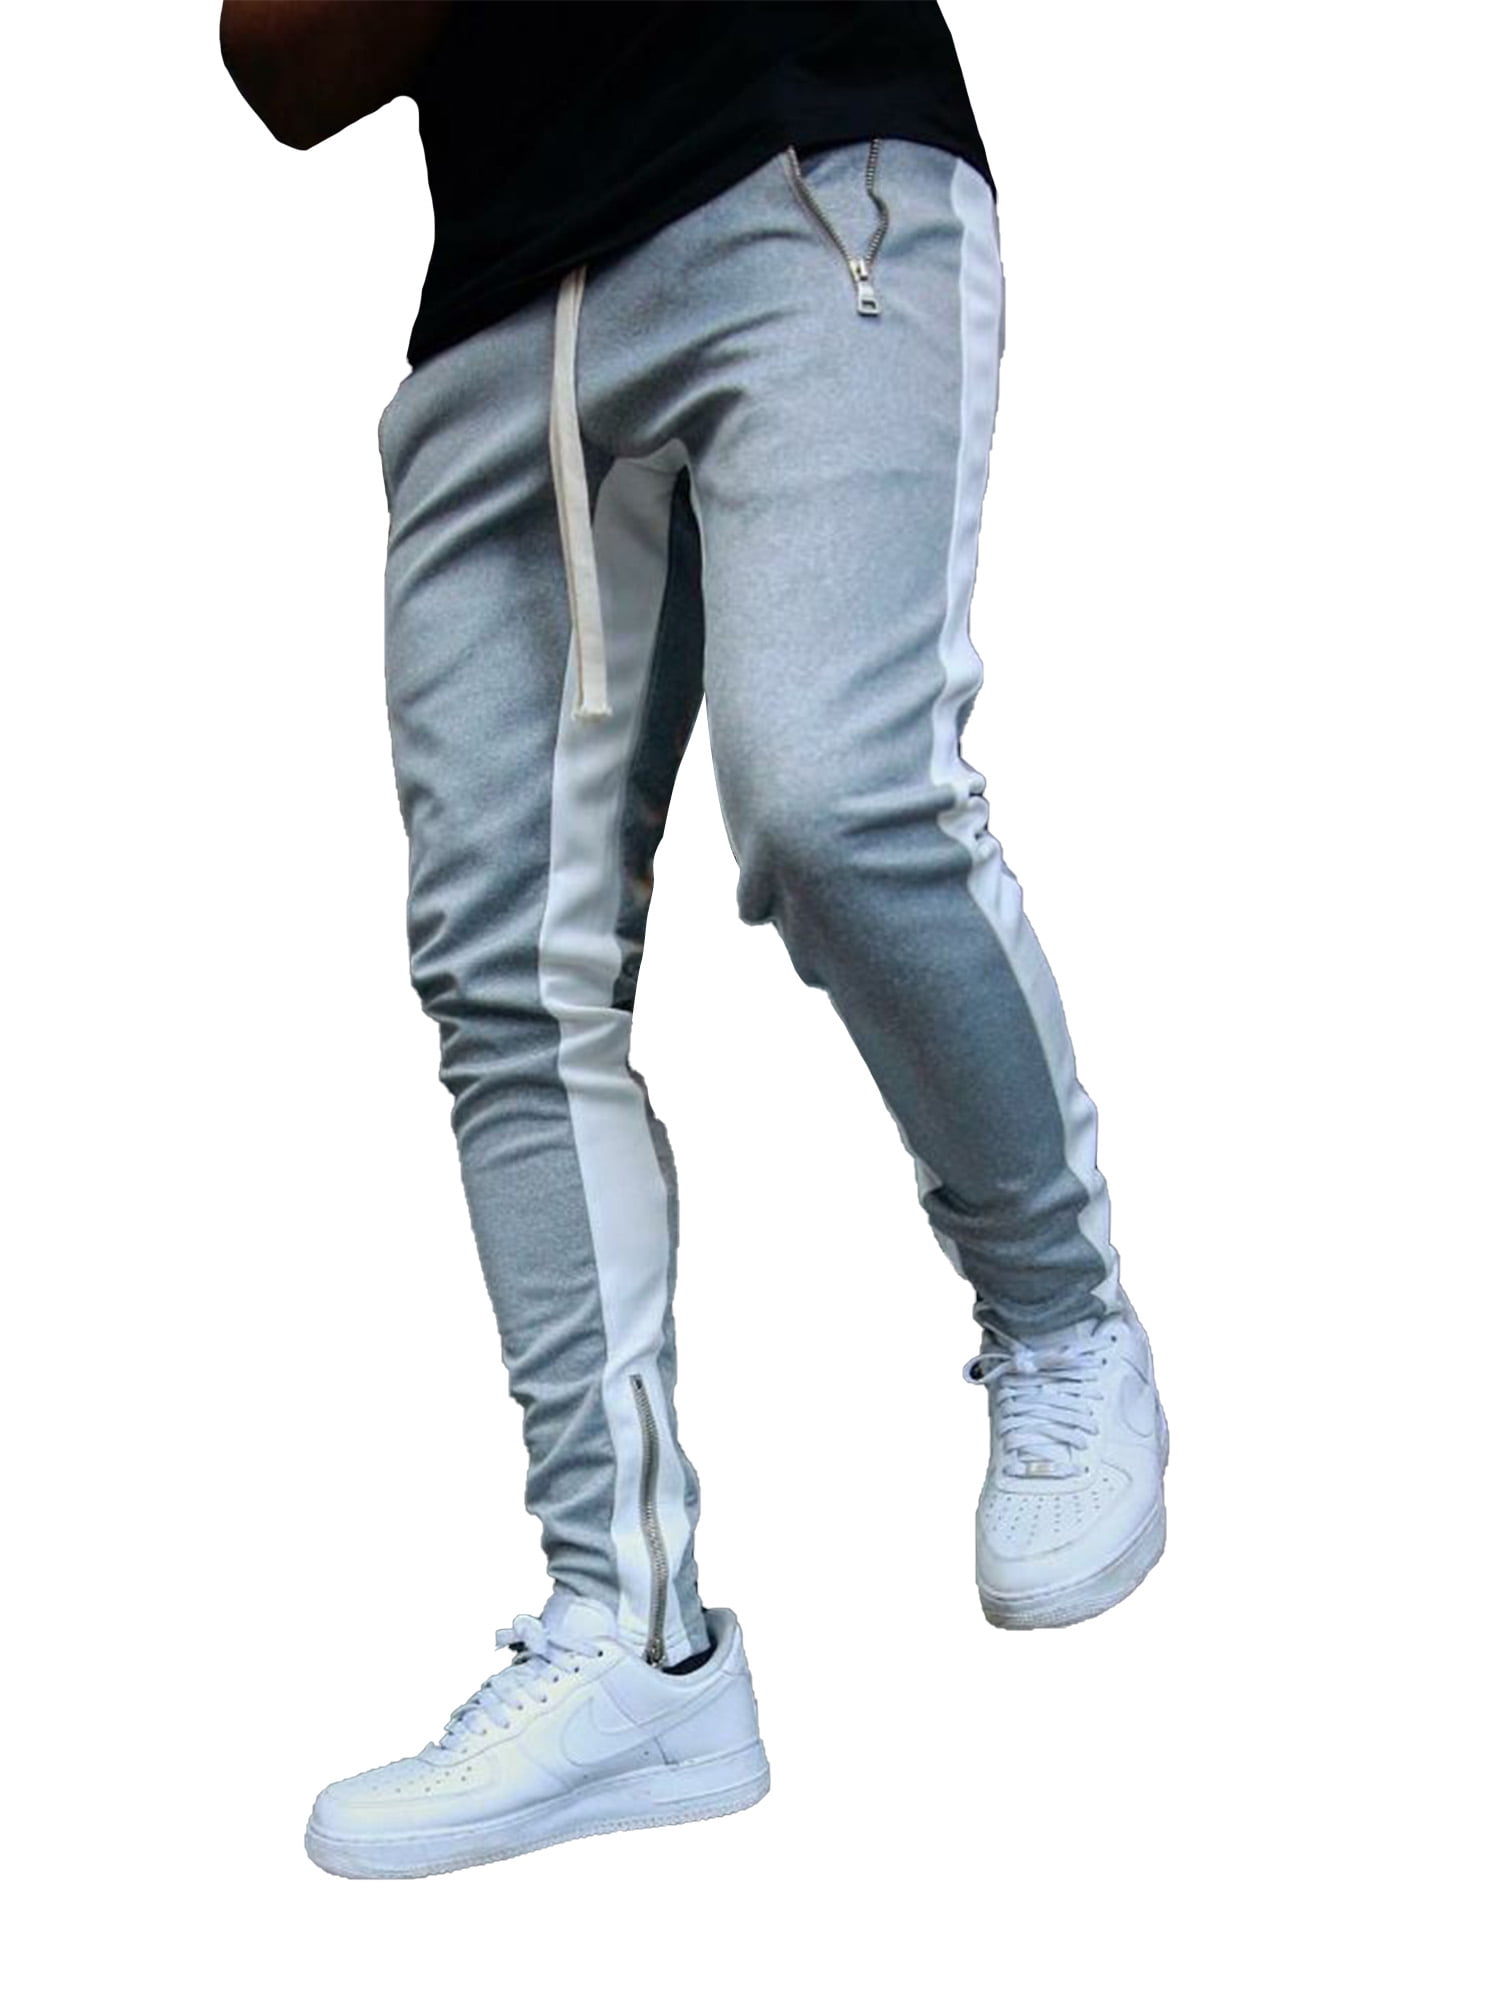 FRPE Men Contrast Color Hip Hop Slim Fit Sport Casual Stretchy Pants Trousers